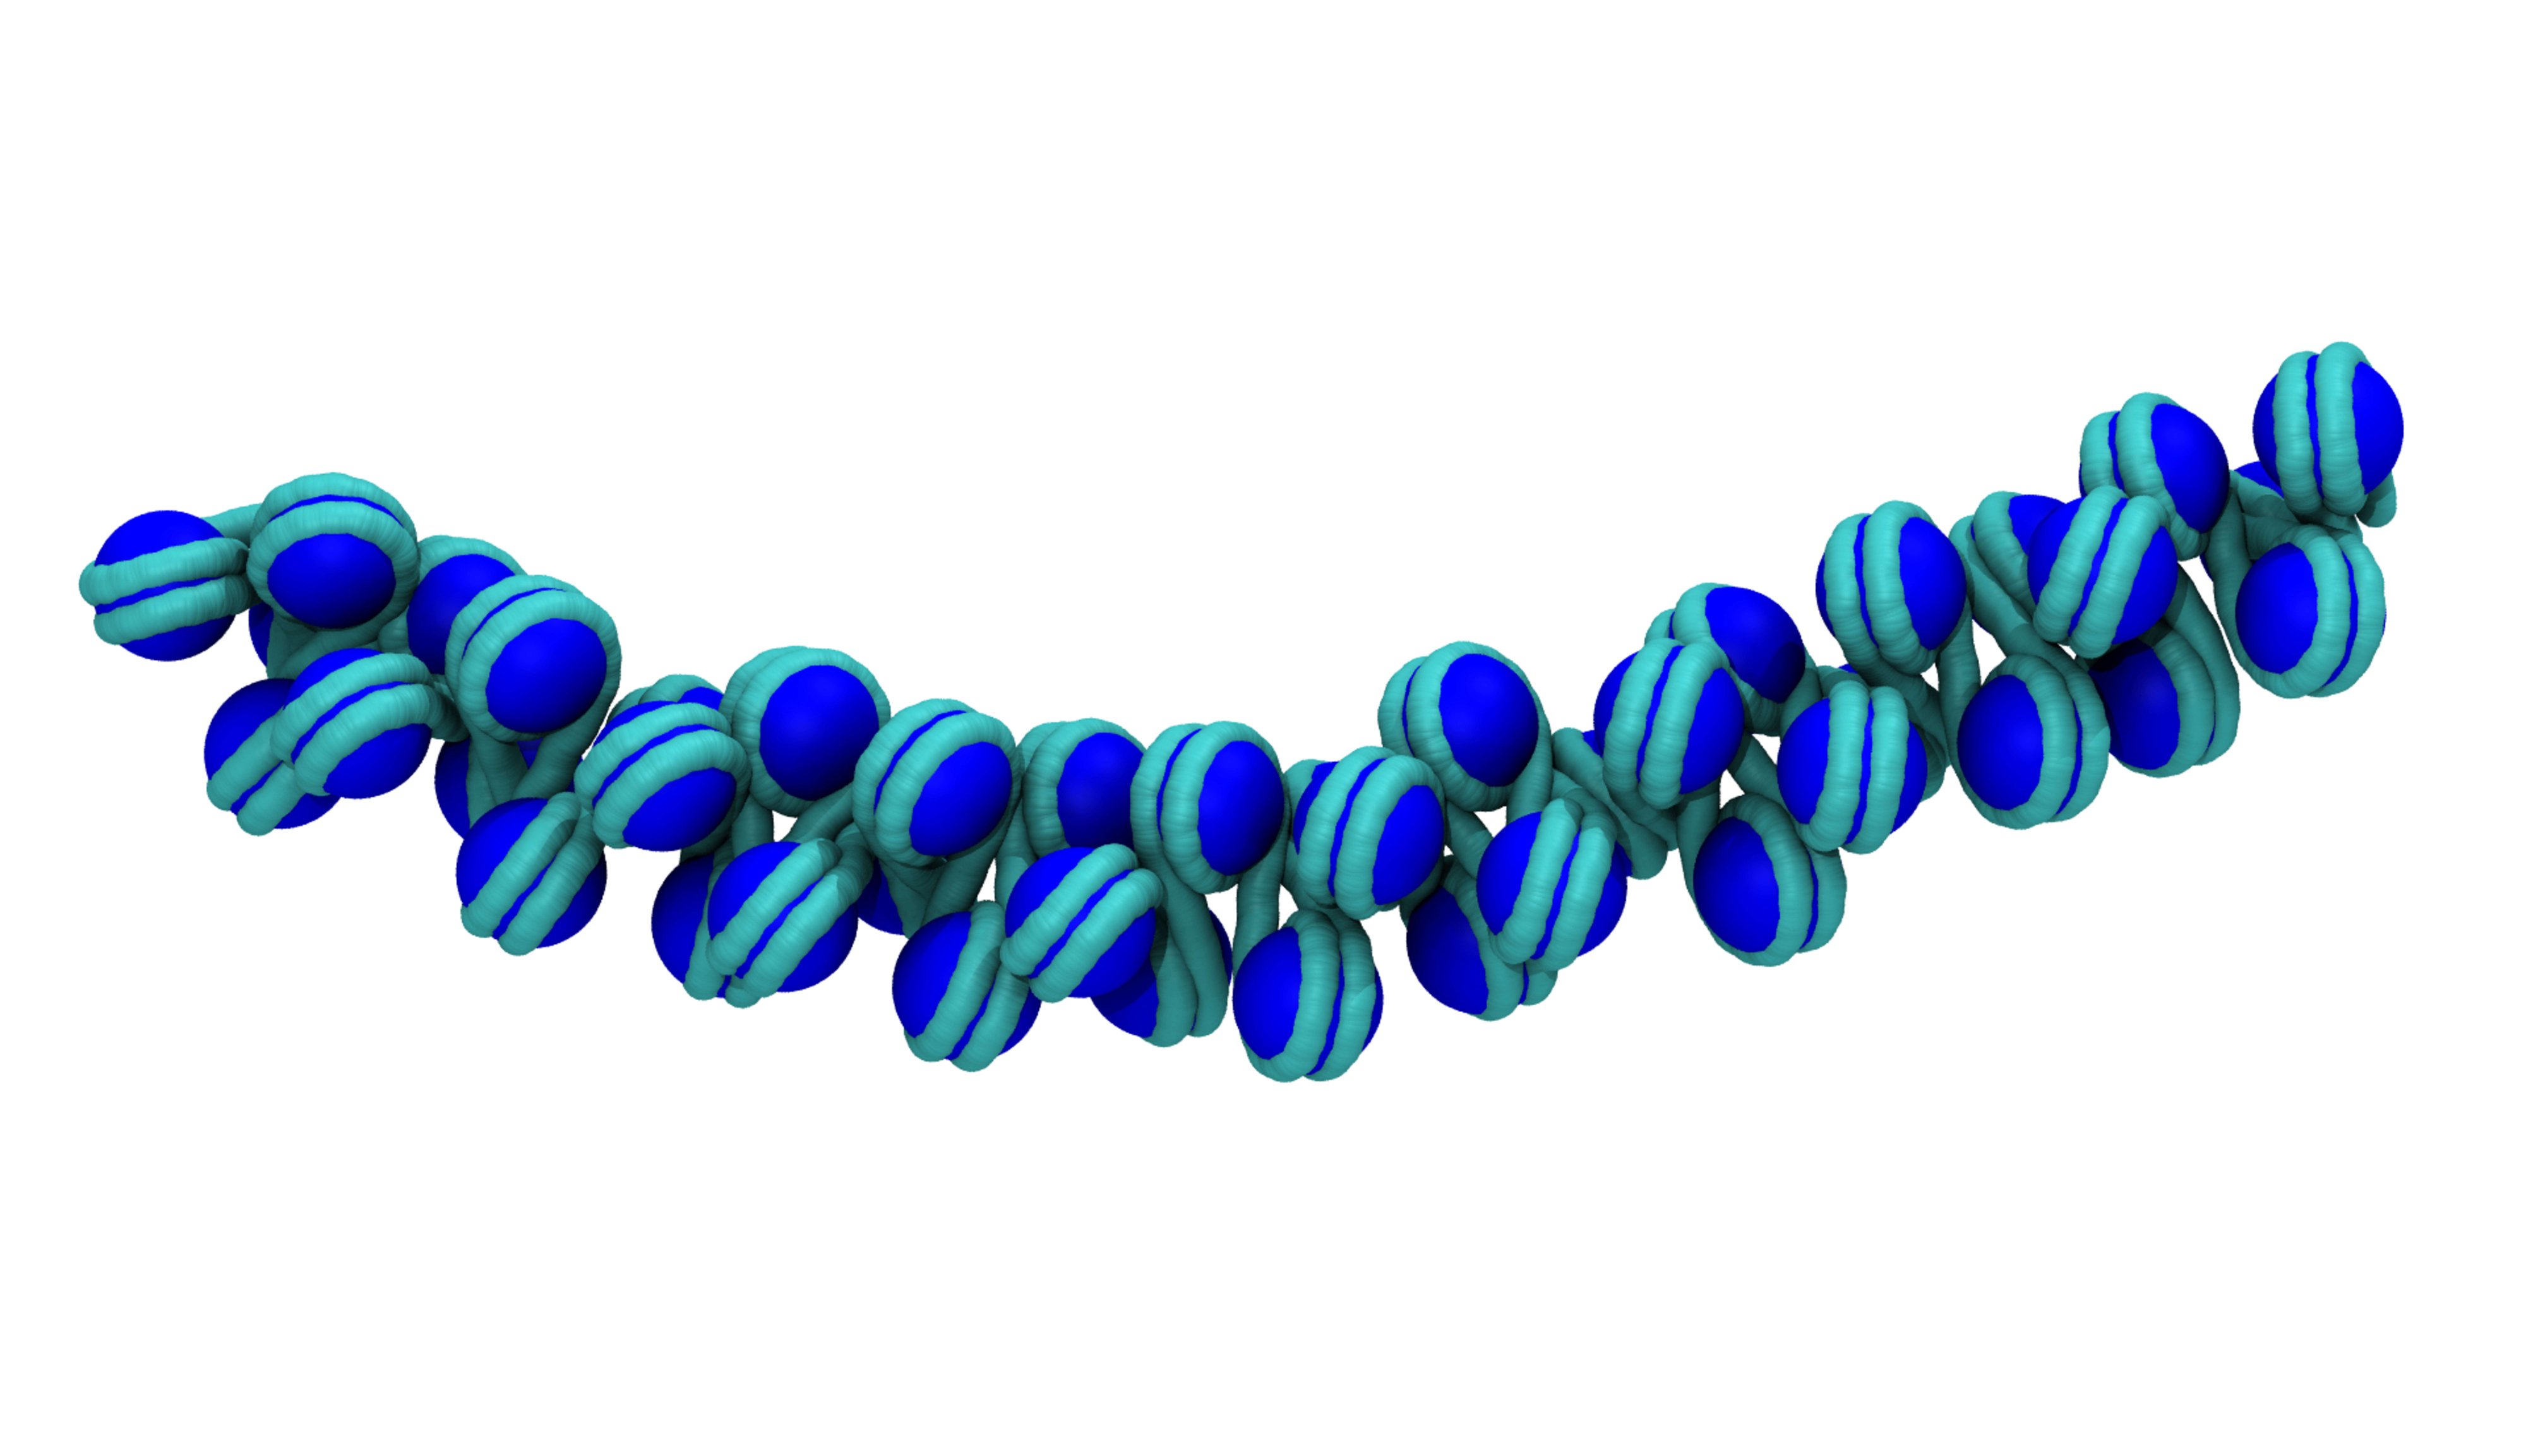 ДНК 3д модель. Хроматин 3д. ДНК фото. 3d абстракция.